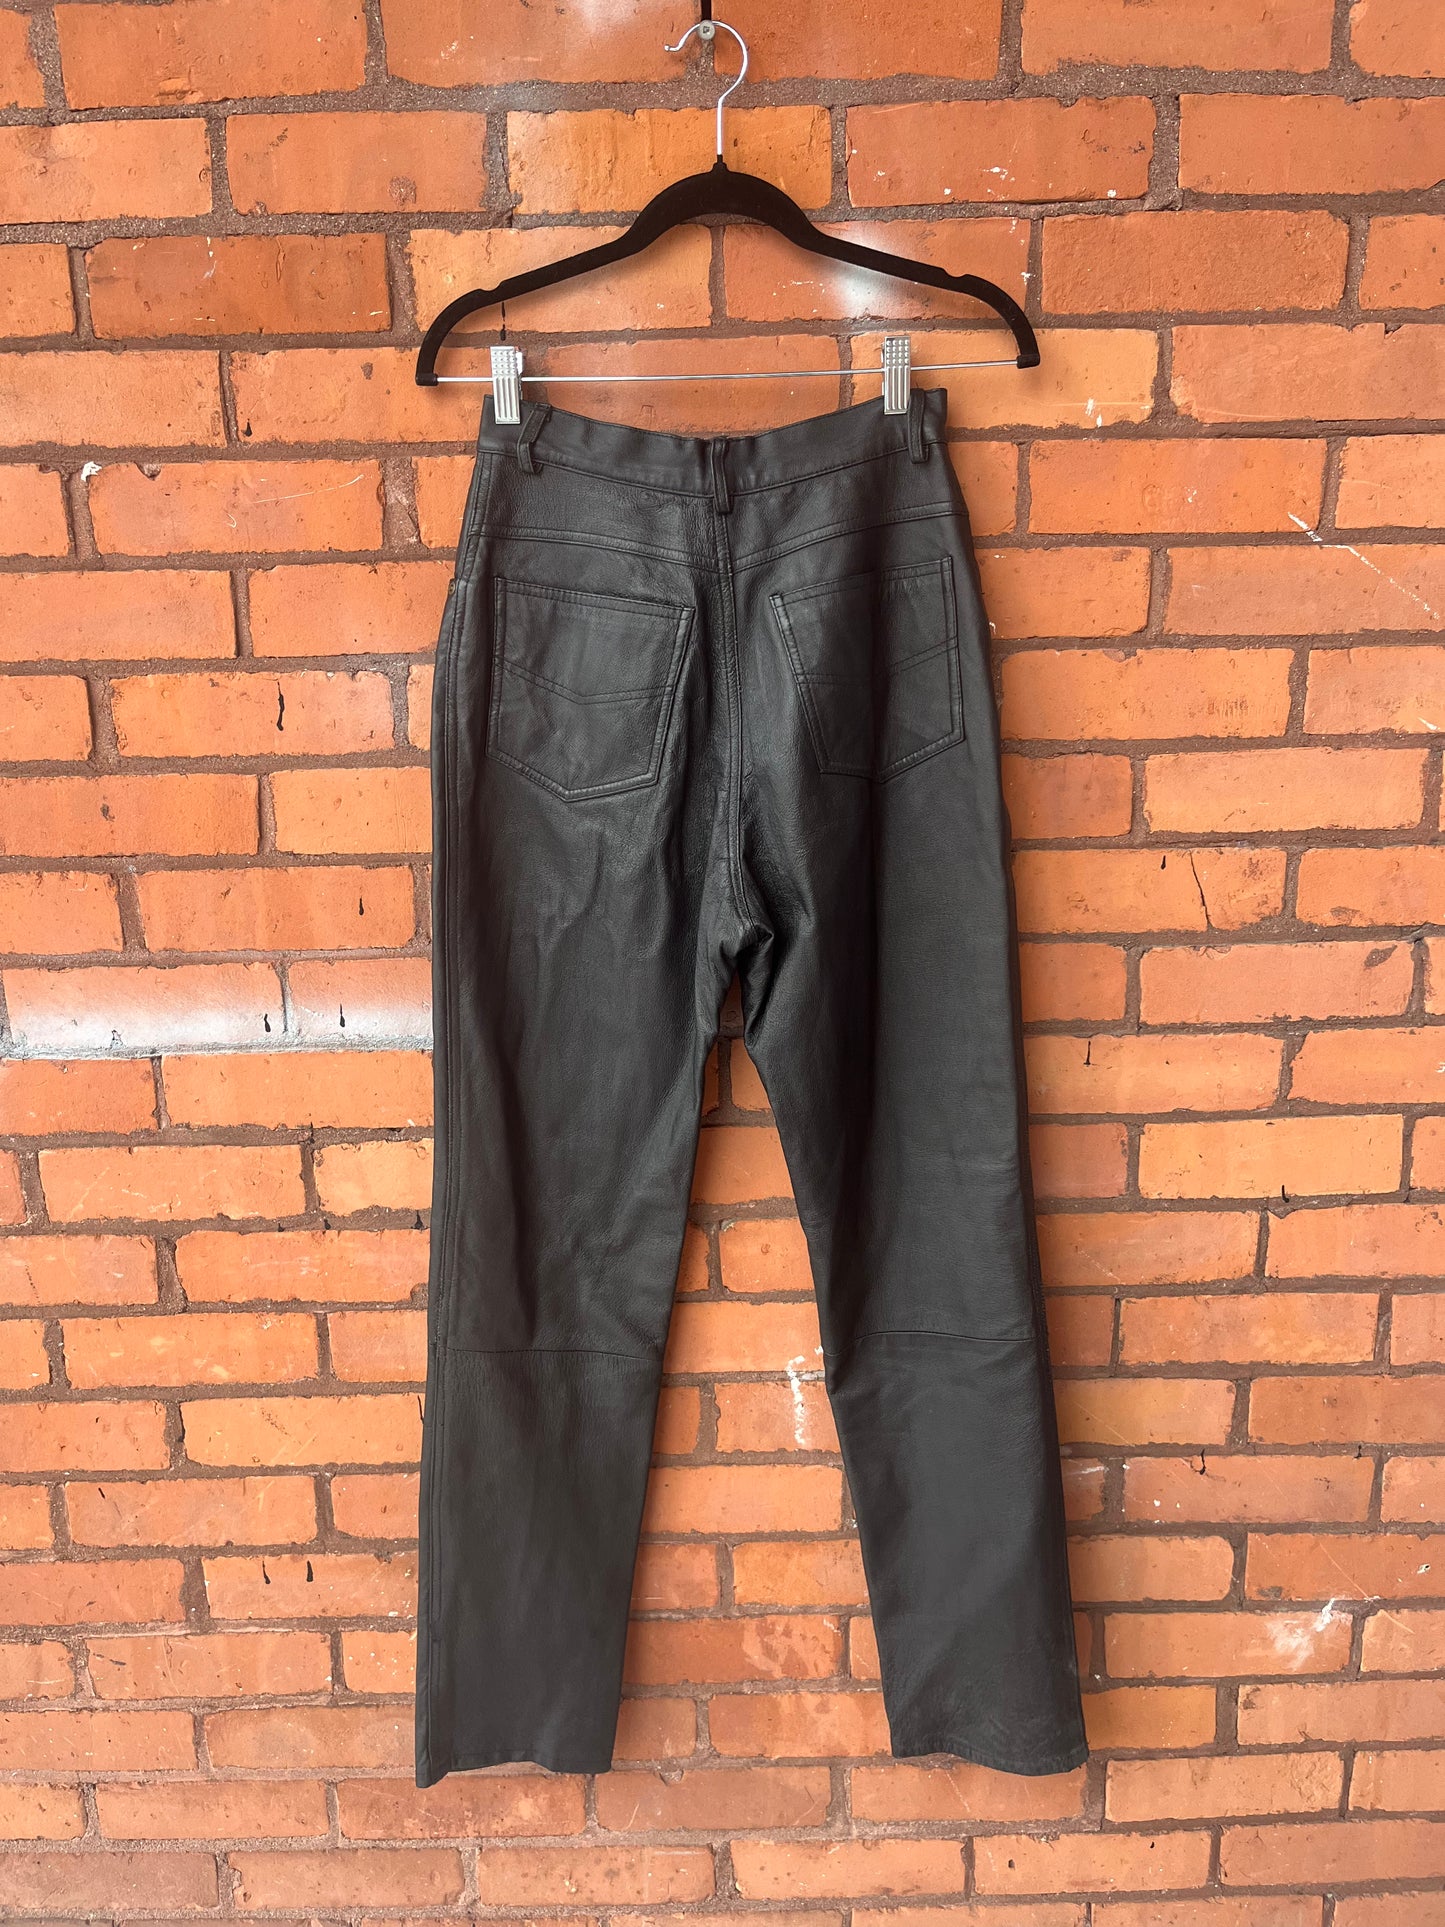 90’s Vintage Black Leather High Waist Pants / 26 Waist